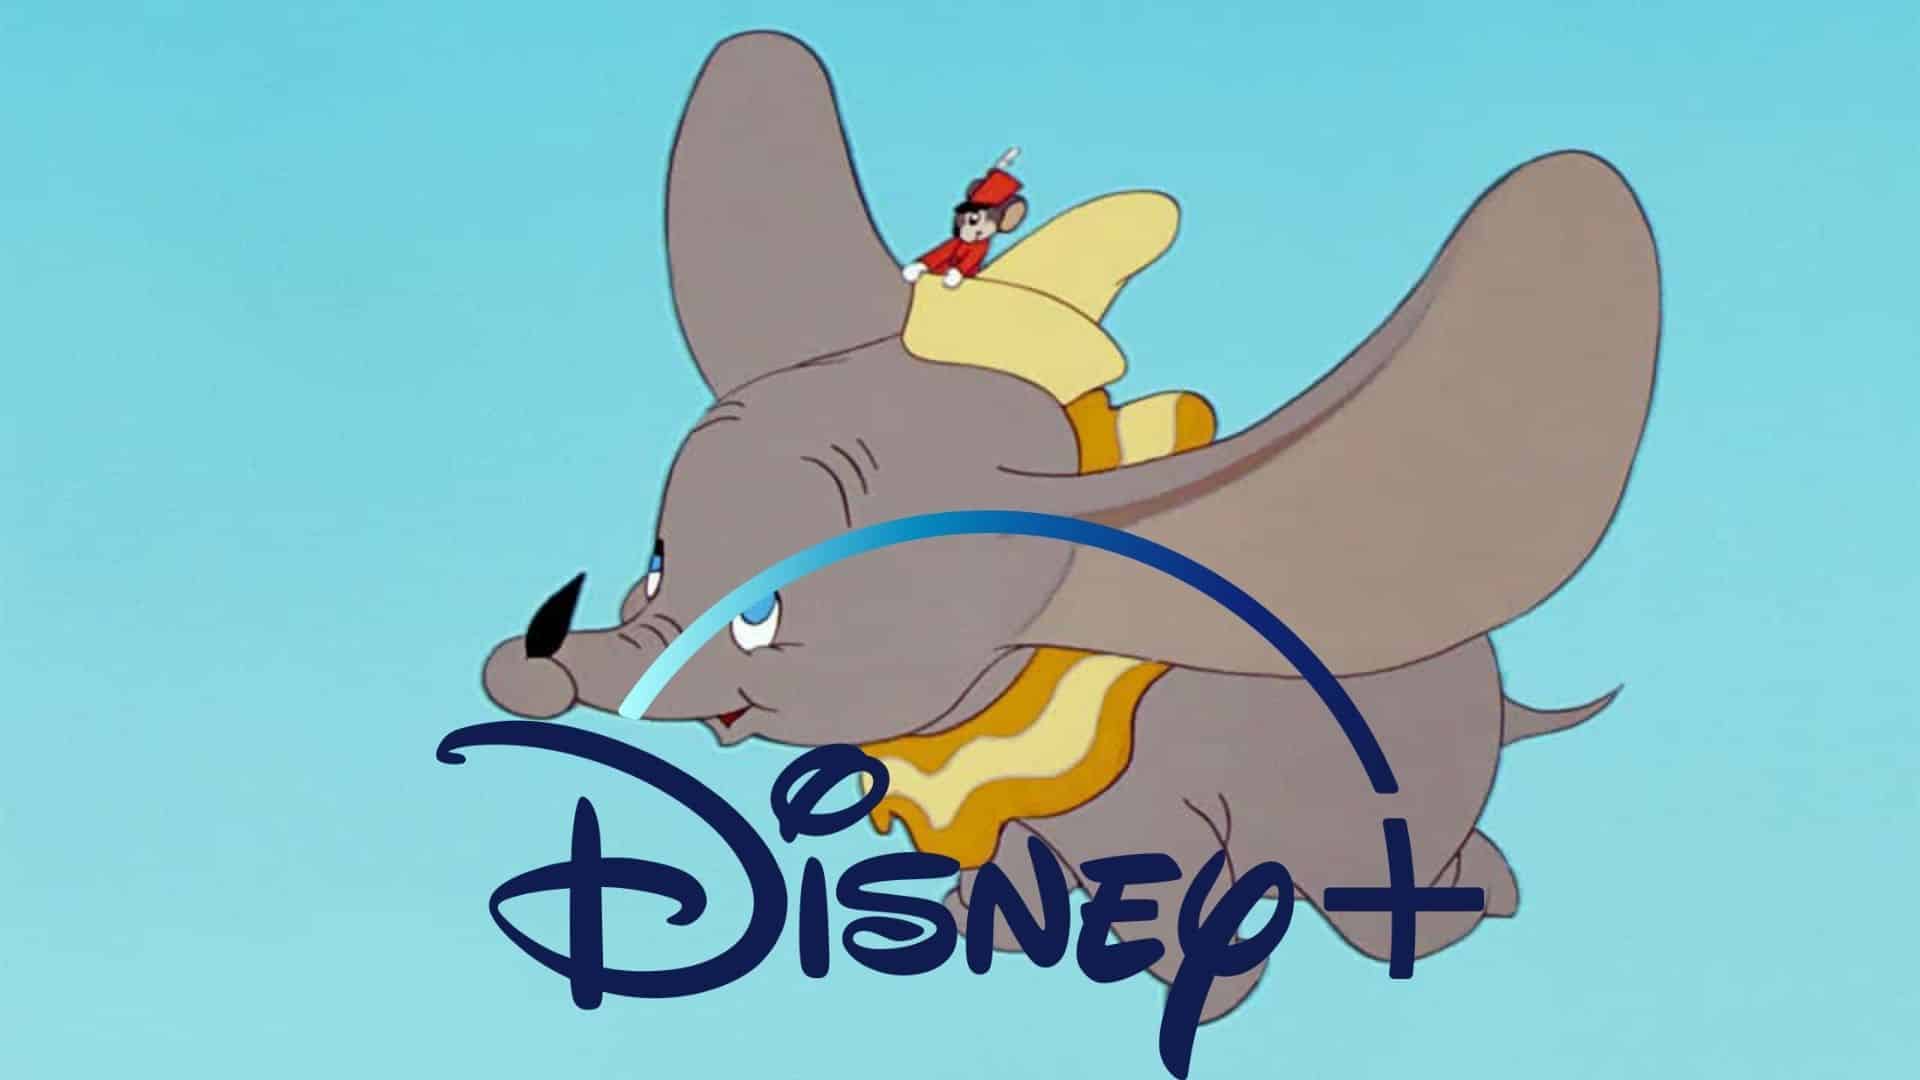 Disney+: al bando Dumbo, Peter Pan e altri classici per contenuti razzisti